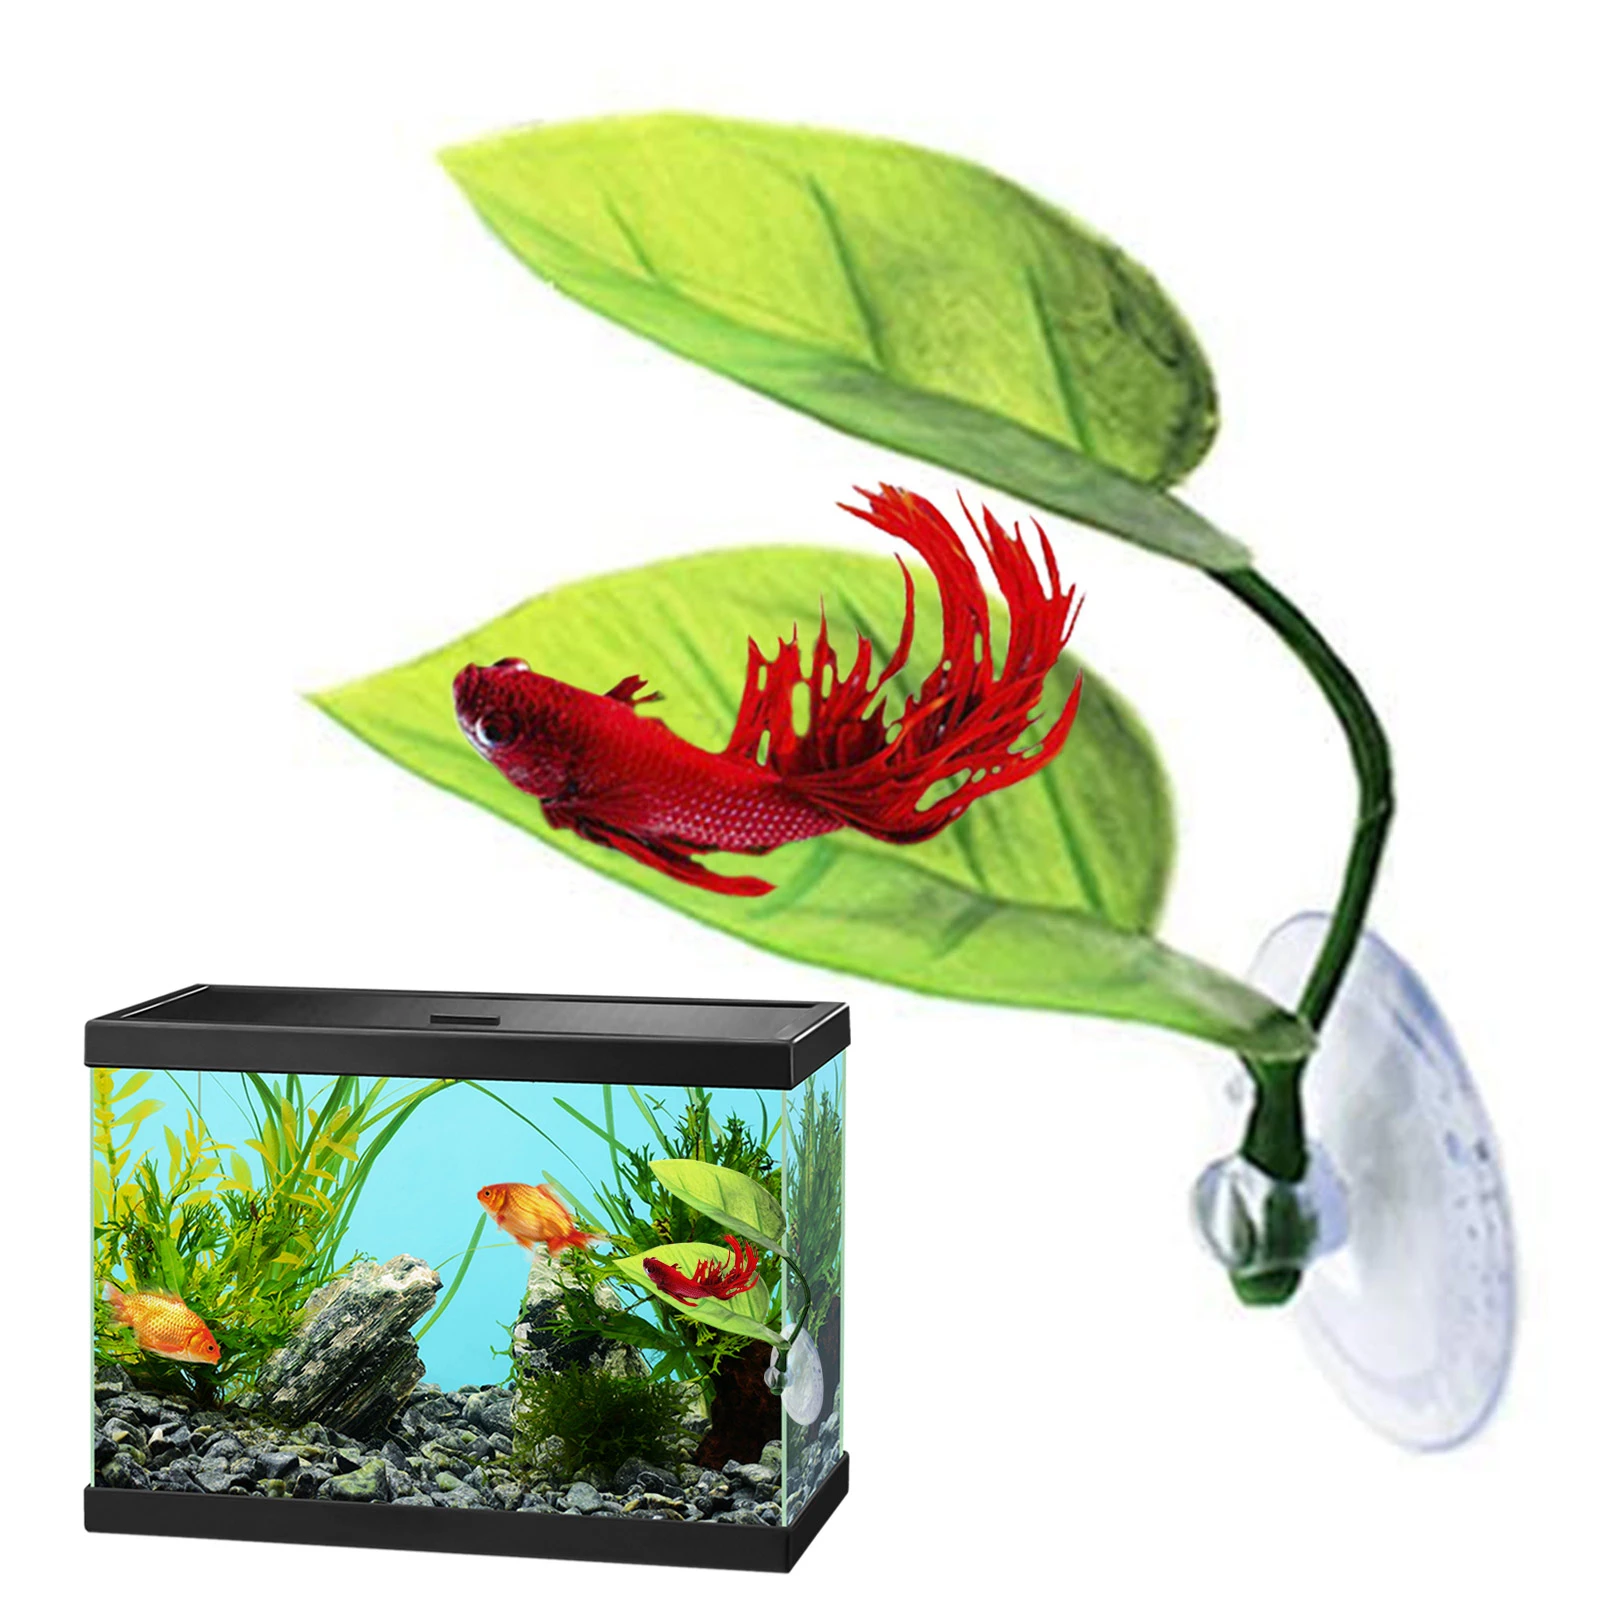 emulsion Nogle gange nogle gange Vær modløs Betta Fish Tank Accessories | Betta Fish Aquarium Plants | Betta Fish  Resting Leaf - Decorations & Ornaments - Aliexpress